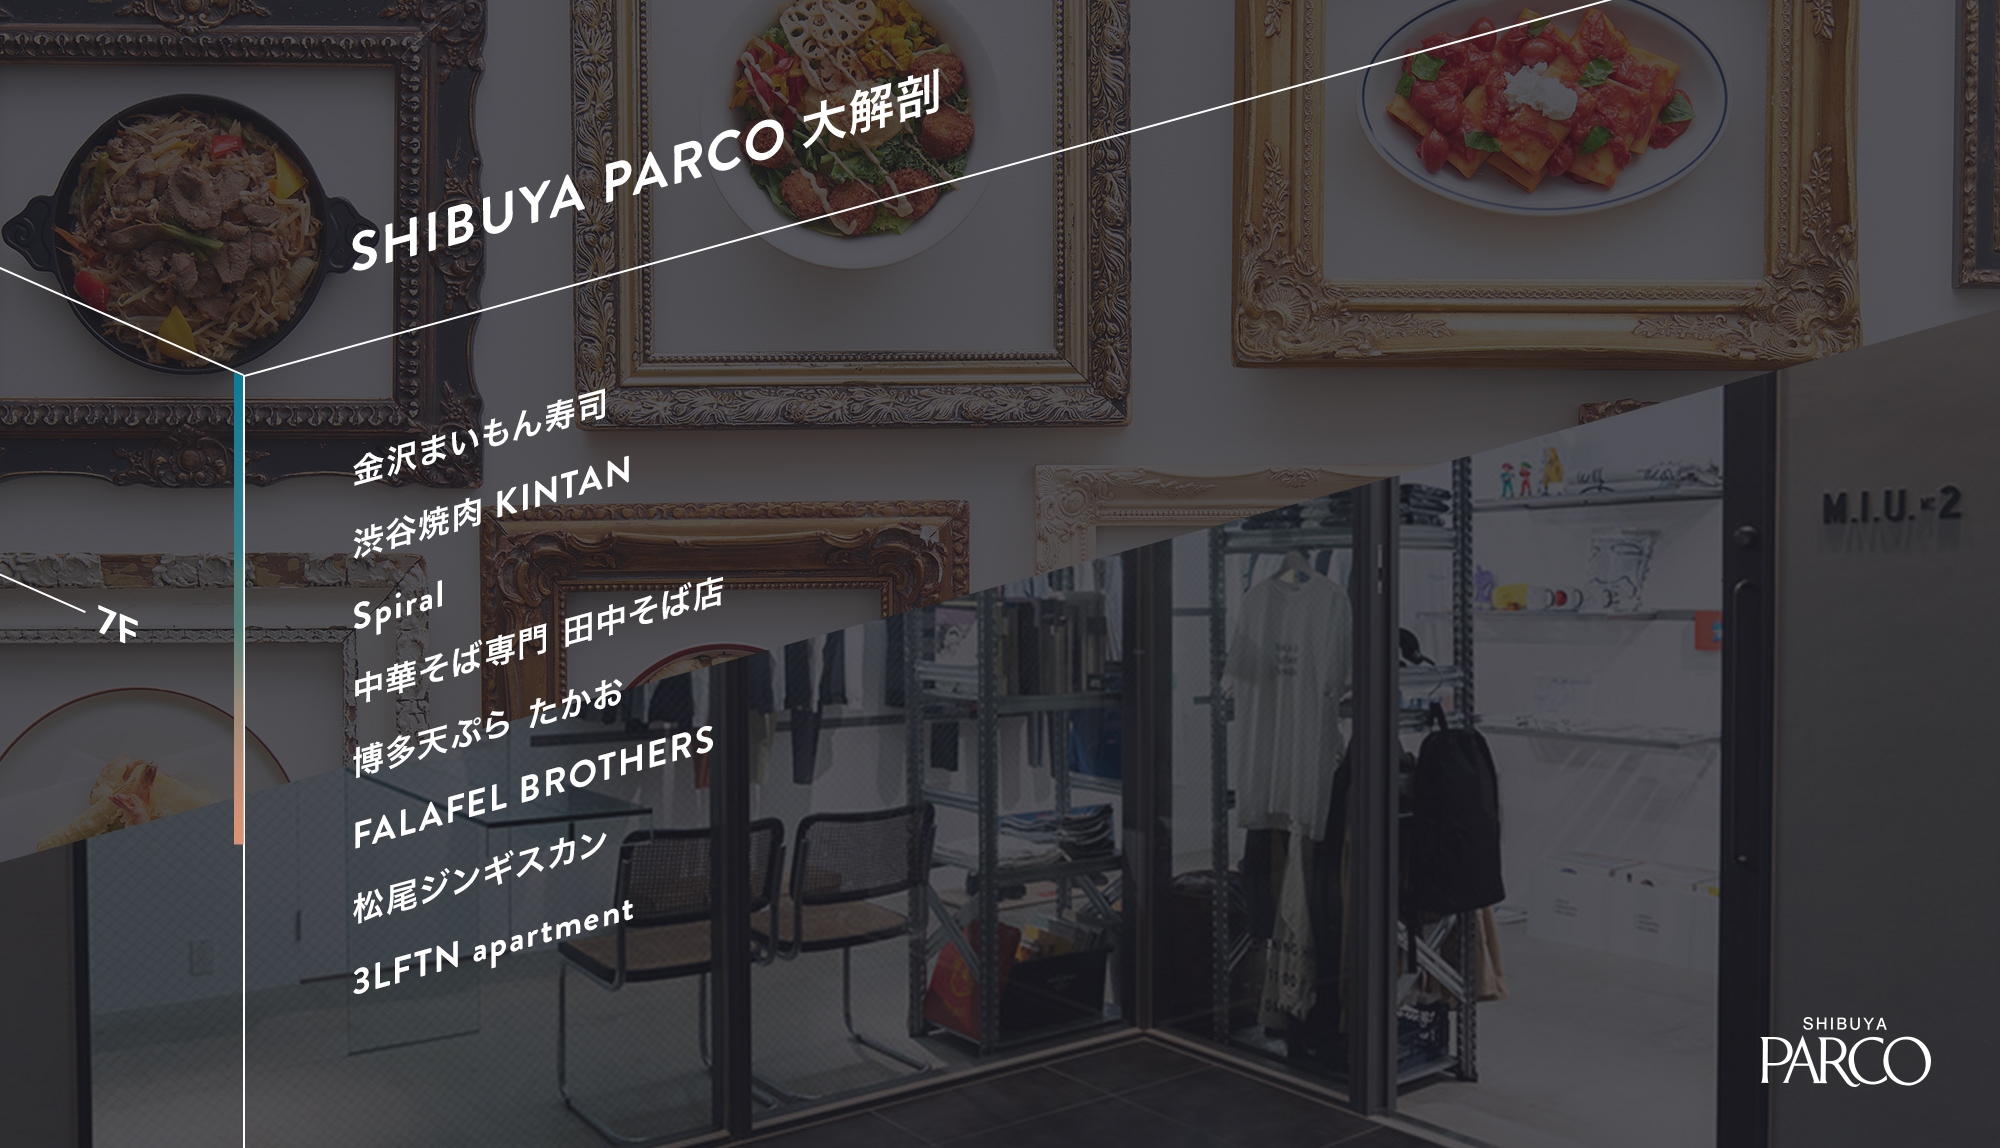 7F RESTAURANT SEVEN│選りすぐりの専門店が渋谷に集まった、新しい“食”と“カルチャー”の発信地